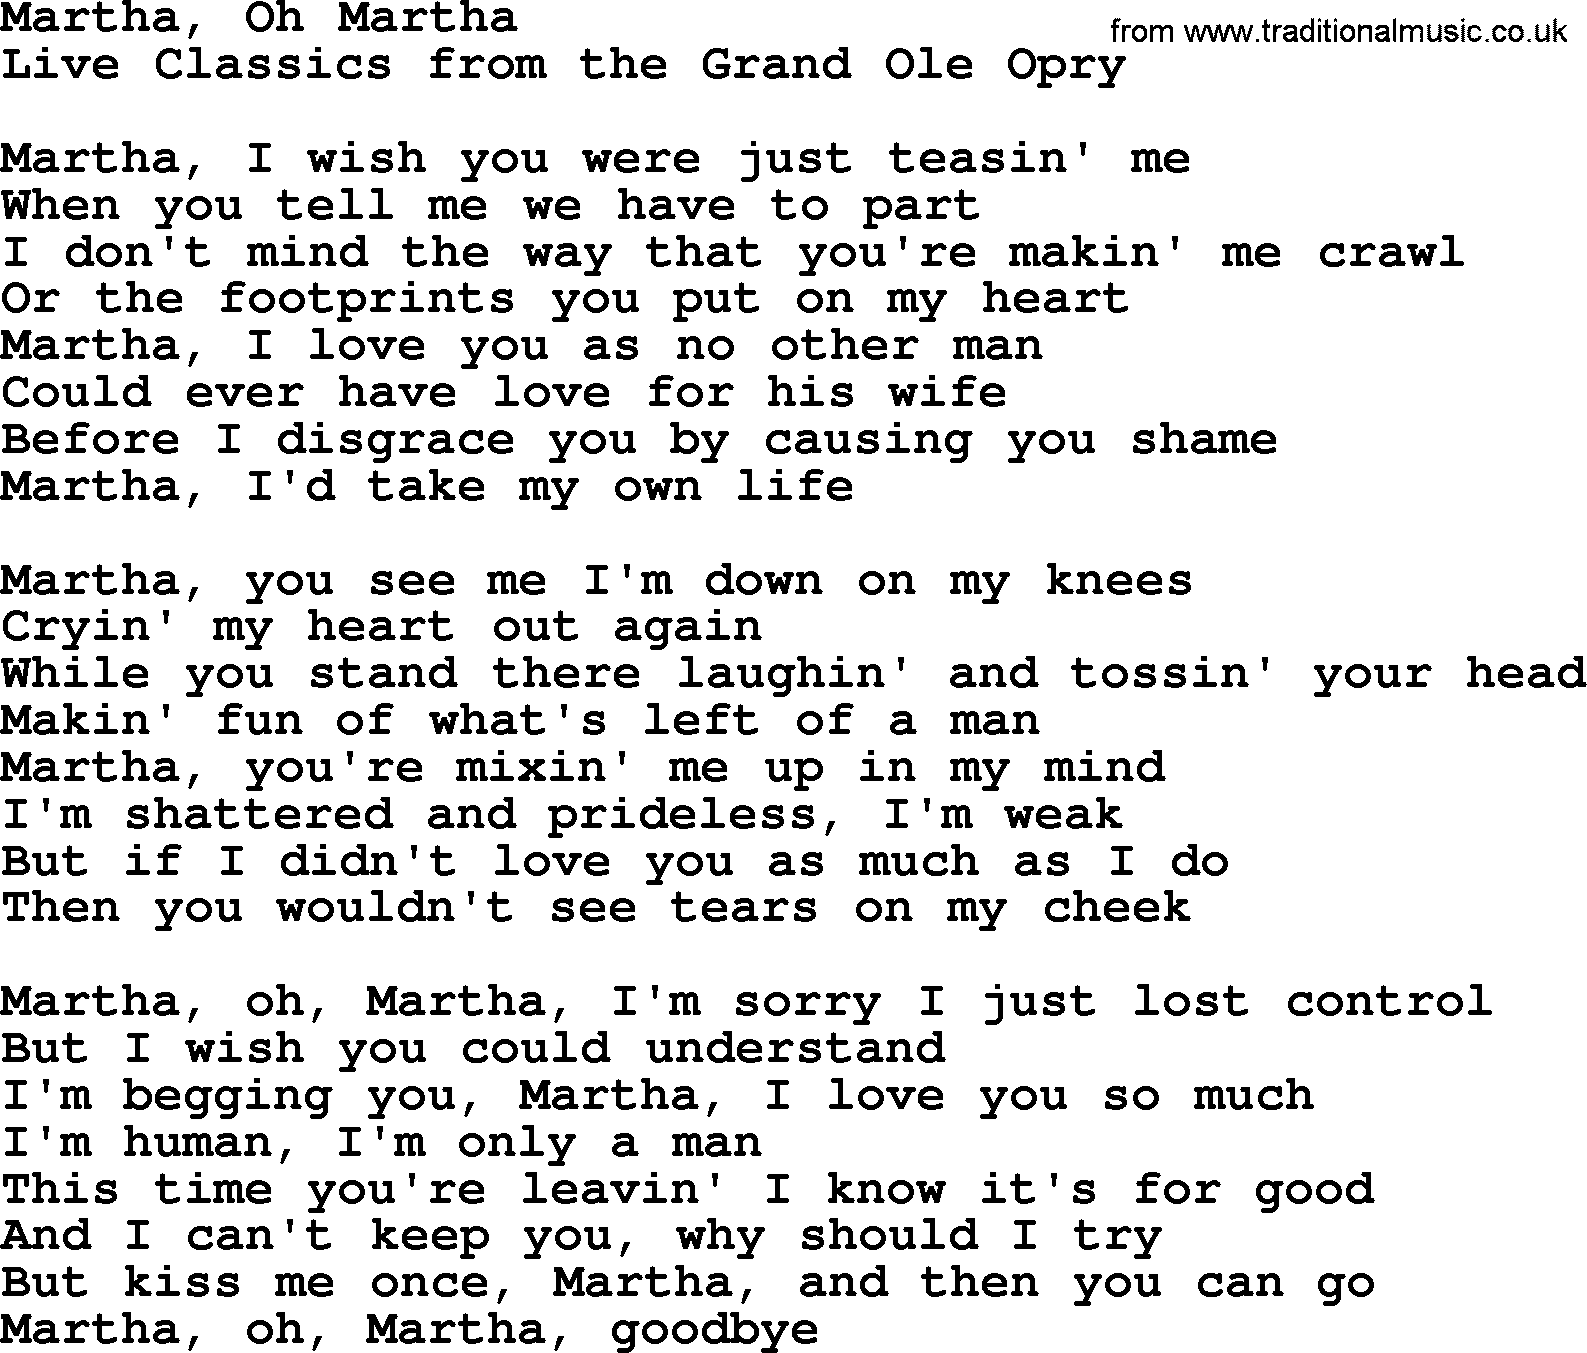 Marty Robbins song: Martha Oh Martha, lyrics